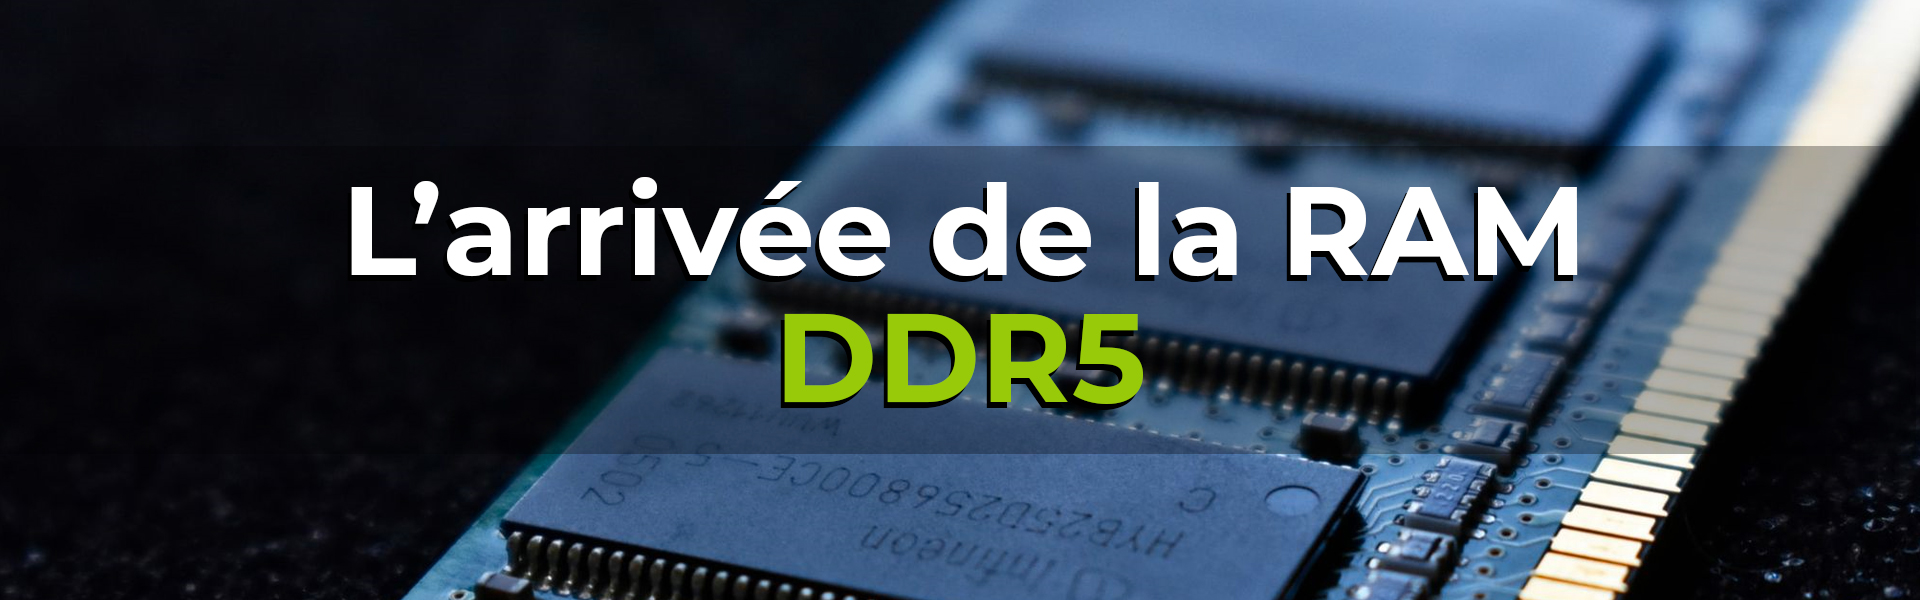 L'arrivée de la RAM DDR5